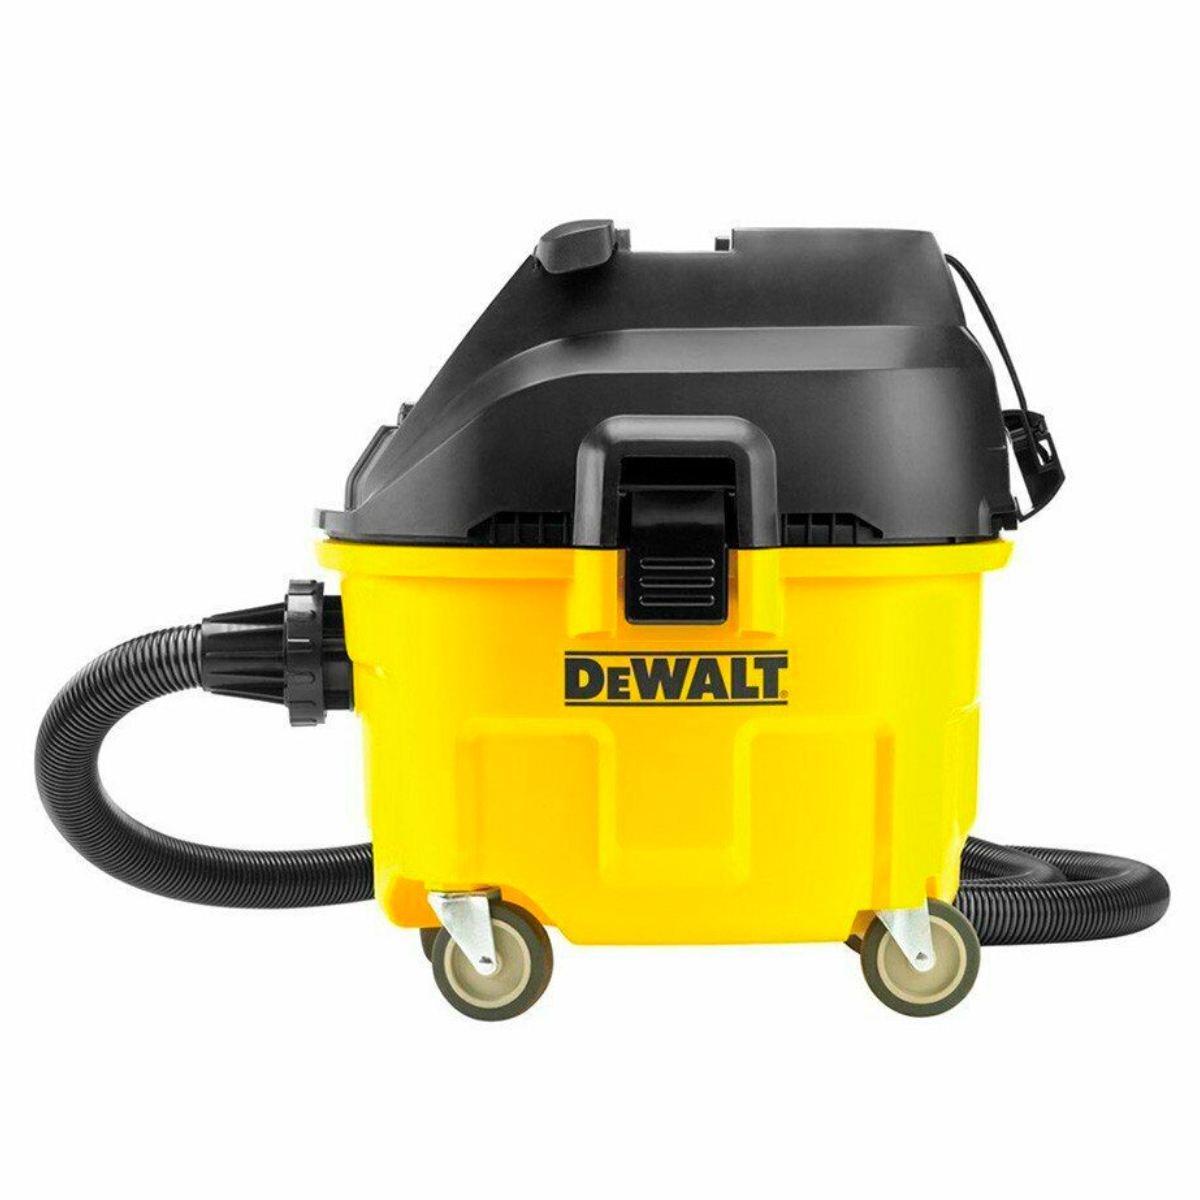 DEWALT Wet And Dry Industrial Vacuum Cleaner